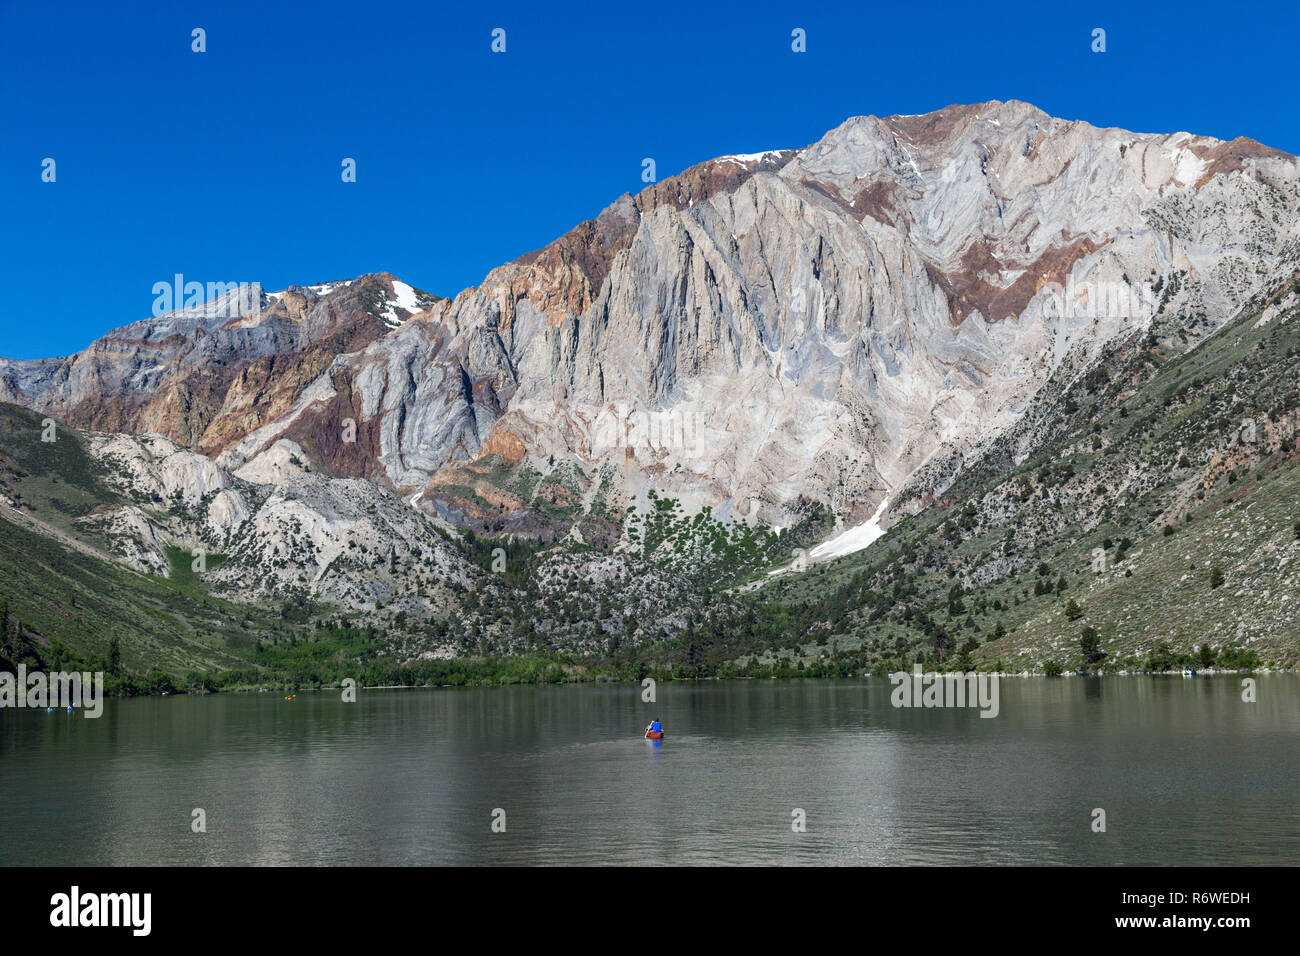 Überführen Sie See in Mammoth Lakes, USA. Mammoth Lakes ist eine Stadt in der kalifornischen Sierra Nevada. Es ist für die Mammoth Mountain und Juni bekannt Stockfoto